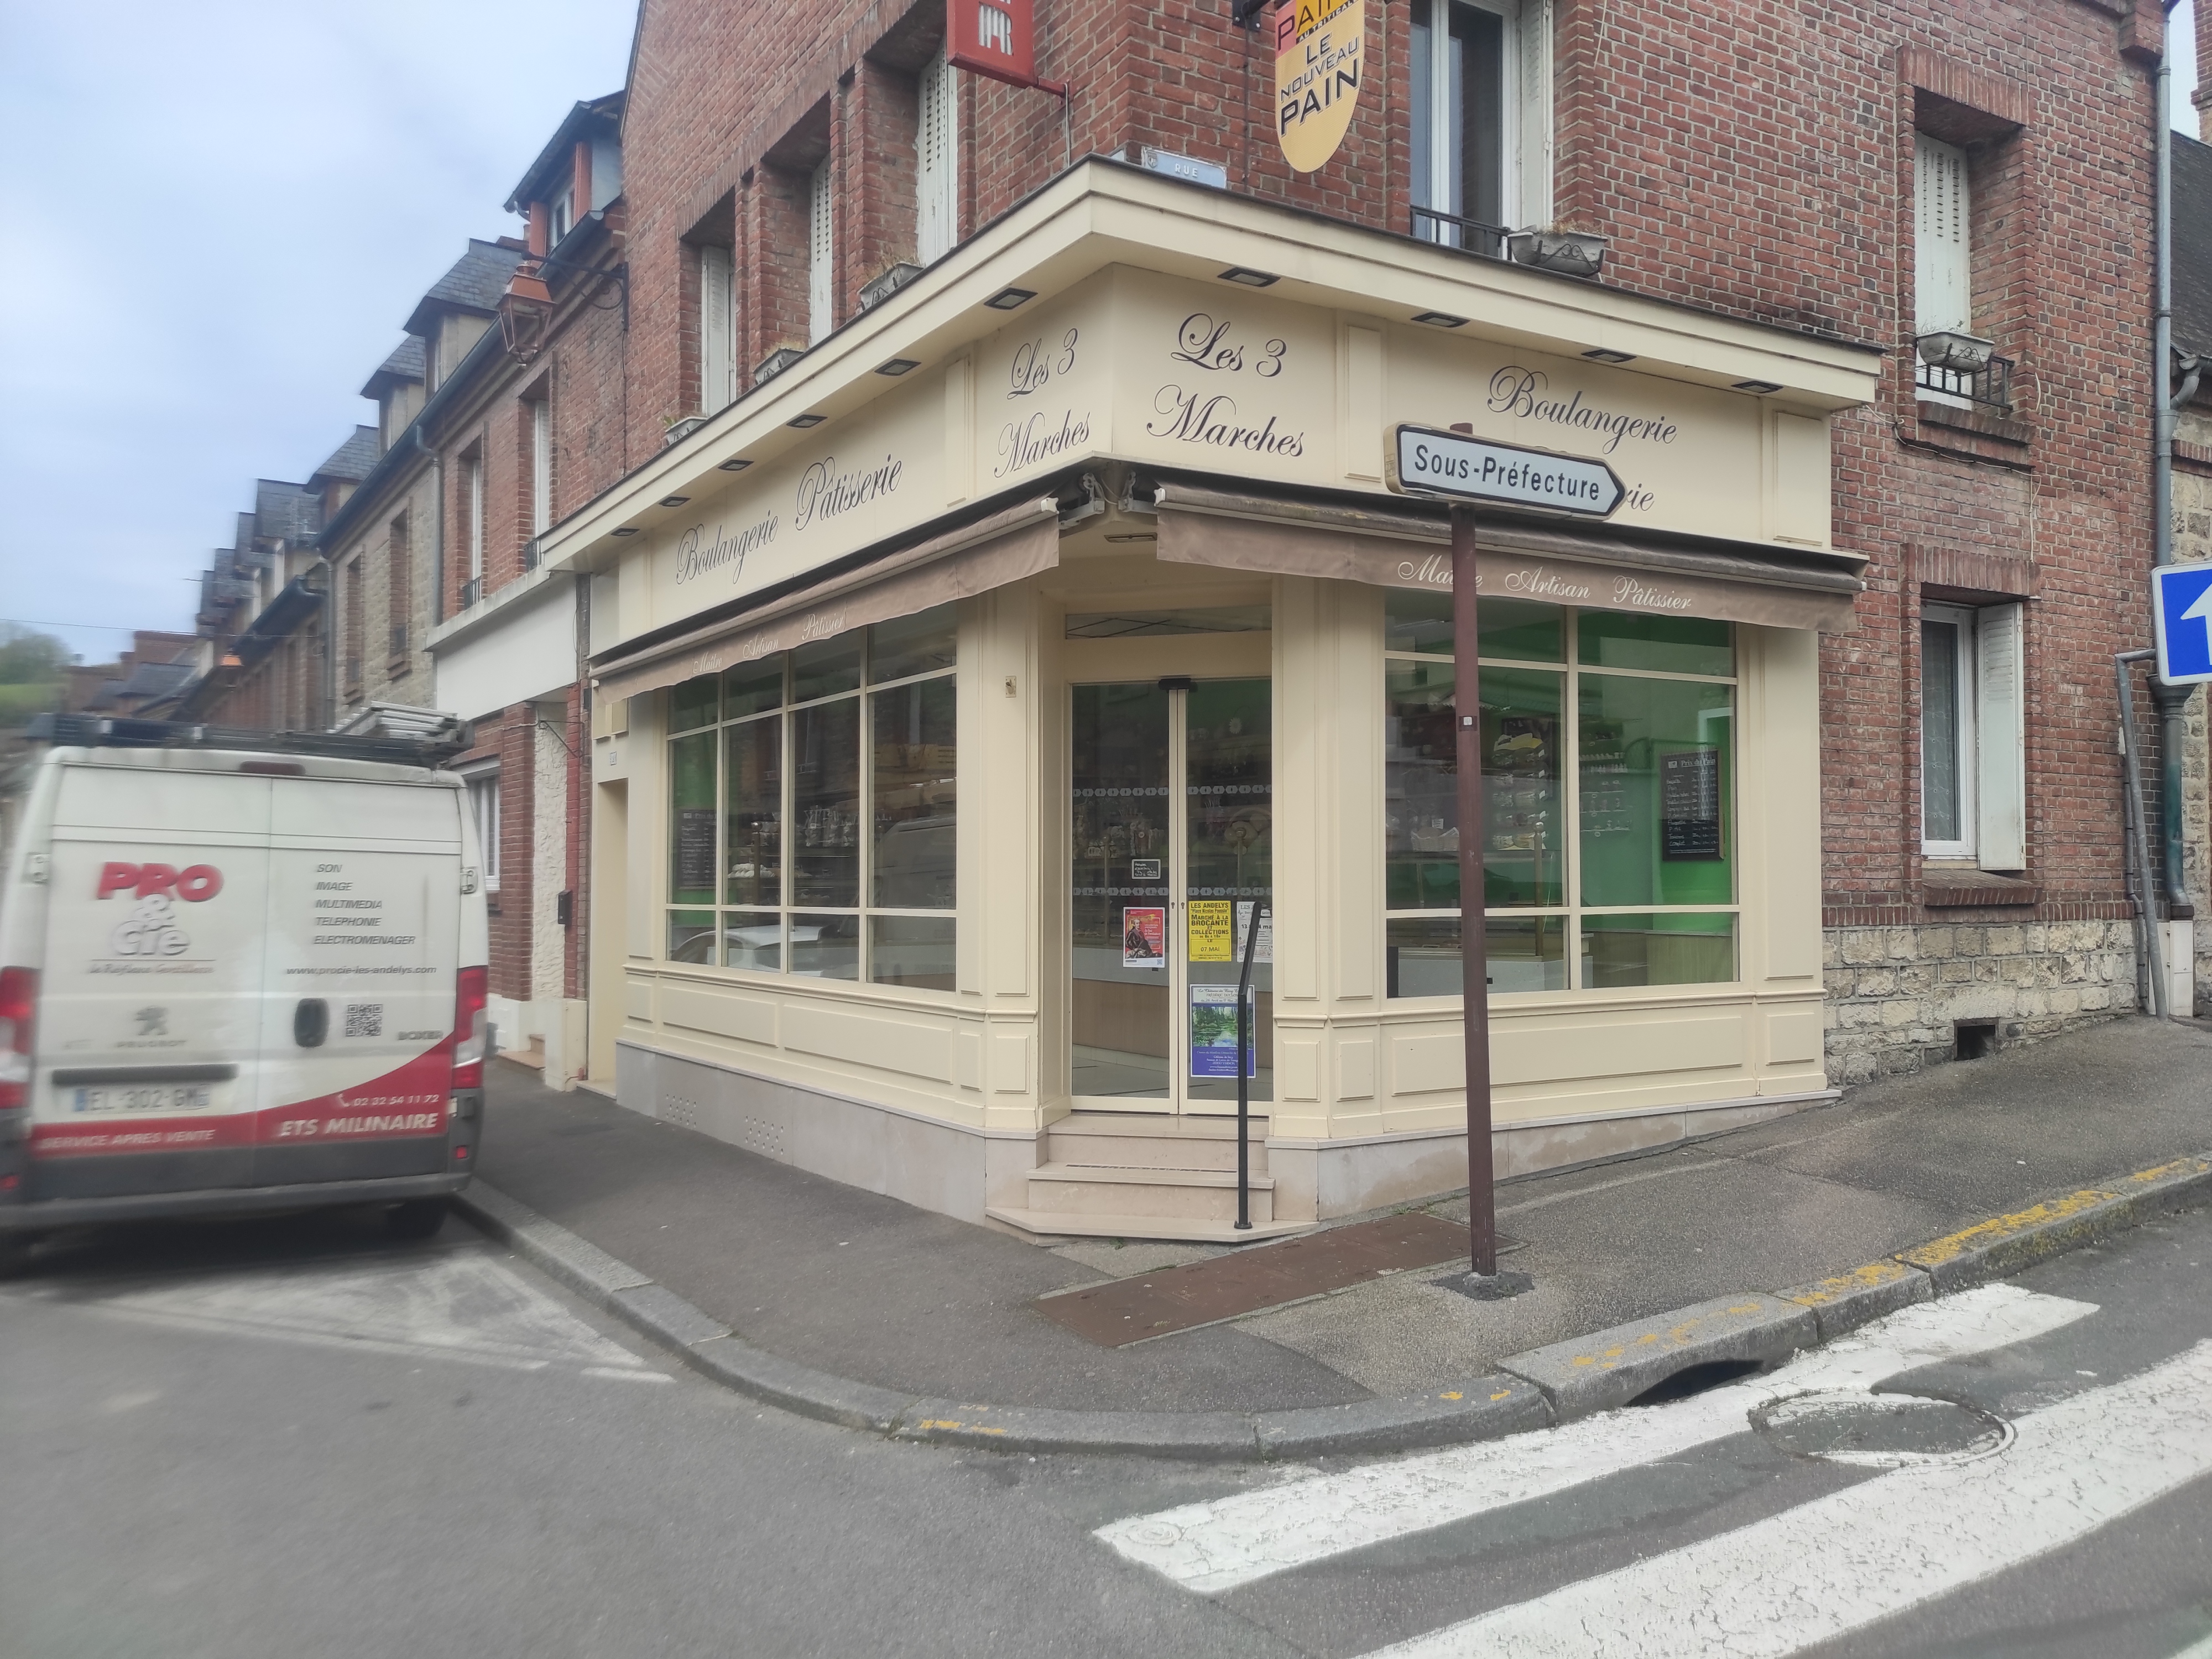 Boulangerie pâtisserie avec tous son équipement en bon état
Chiffre d affaire 200000 euros
Magasin d angle dans rue commerçante
Magazine récent et très joli
Logement F3